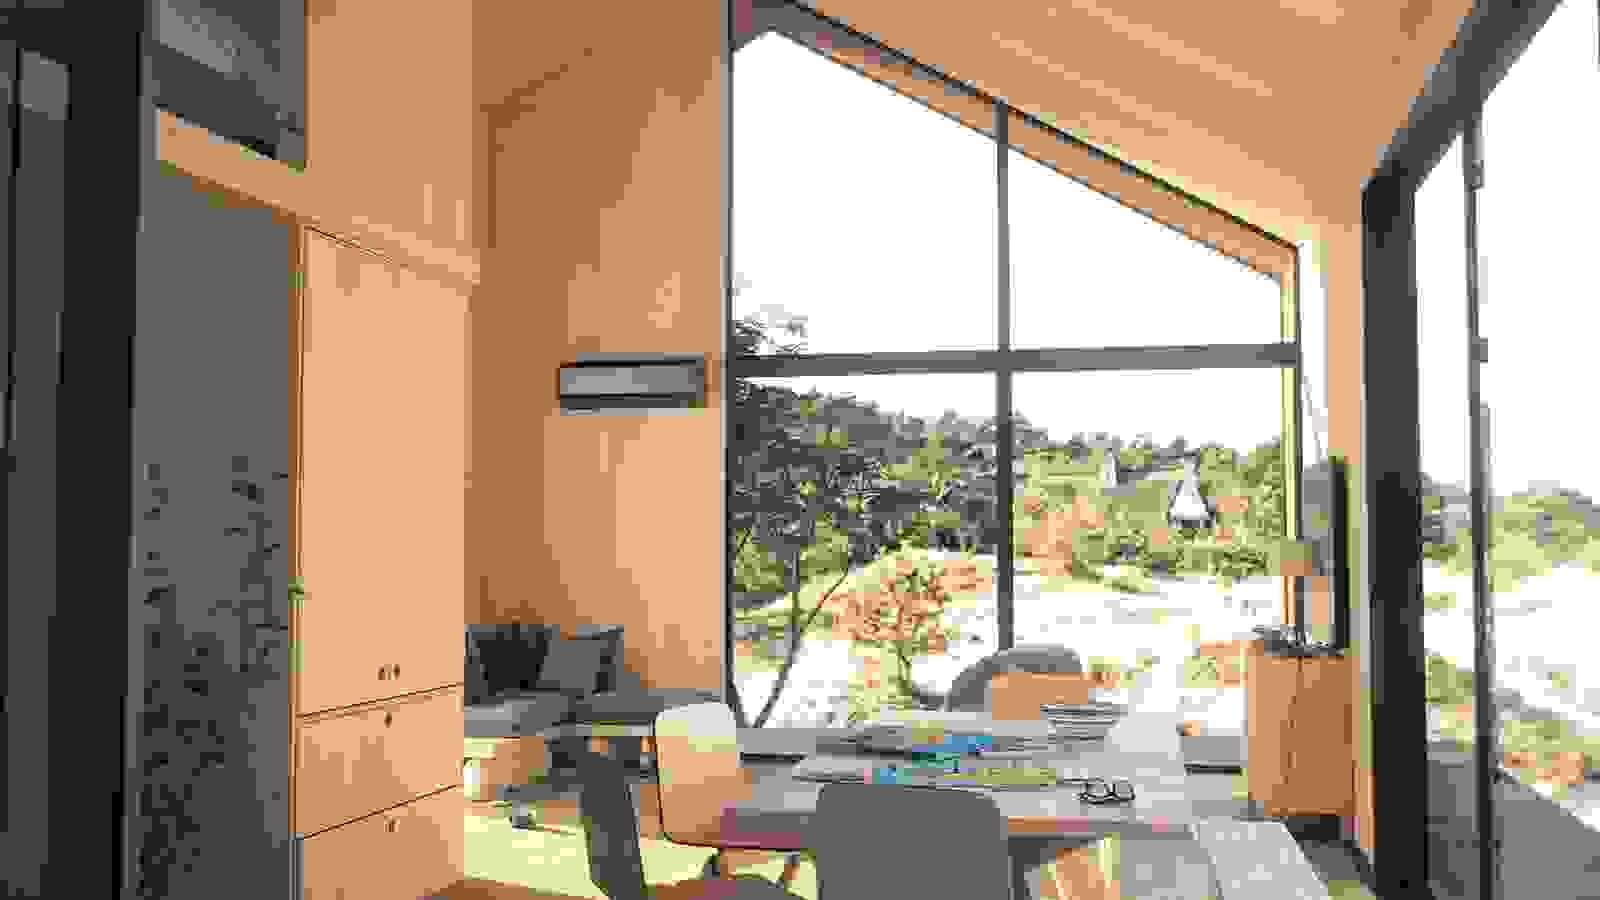 Bosch Climate luft/luftvärmepump installerad i ett modernt, ljust vardagsrum med stora fönster som vetter ut mot naturen